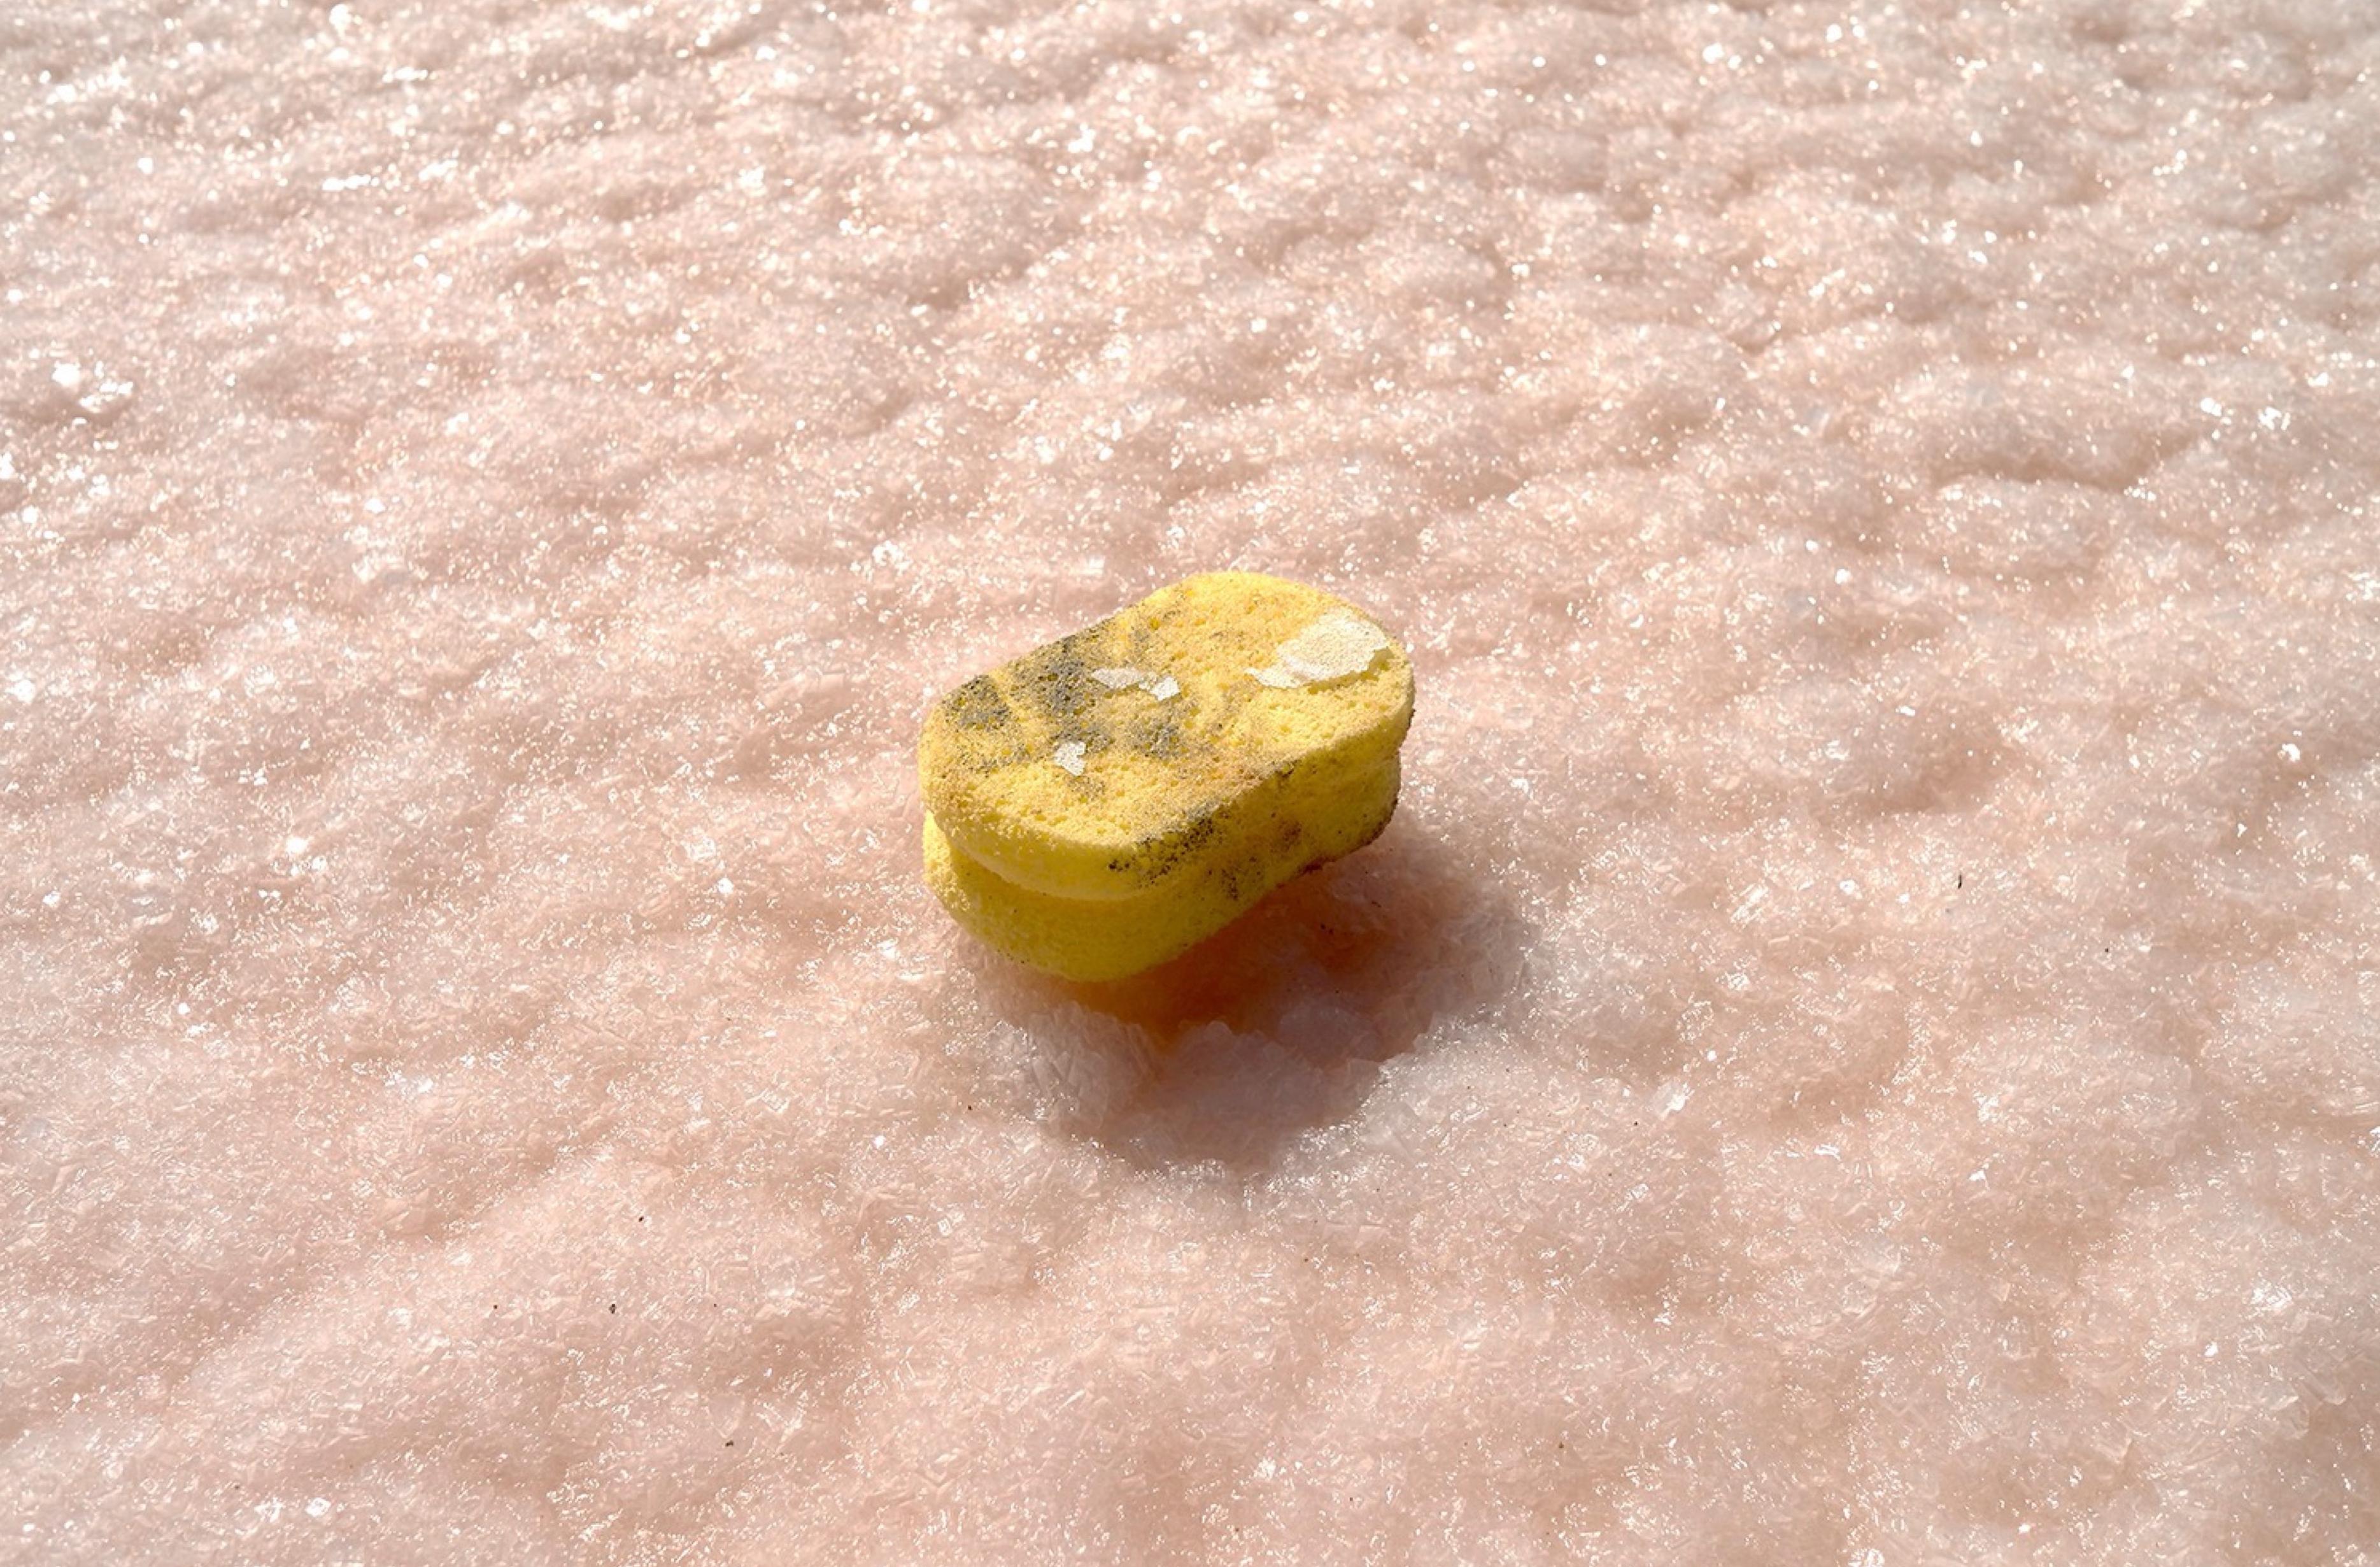 Portrait Photograph Maria Moldes - Le sol plein de sel rose, cuillère jaune, ombres surréalistes, coquette pop art